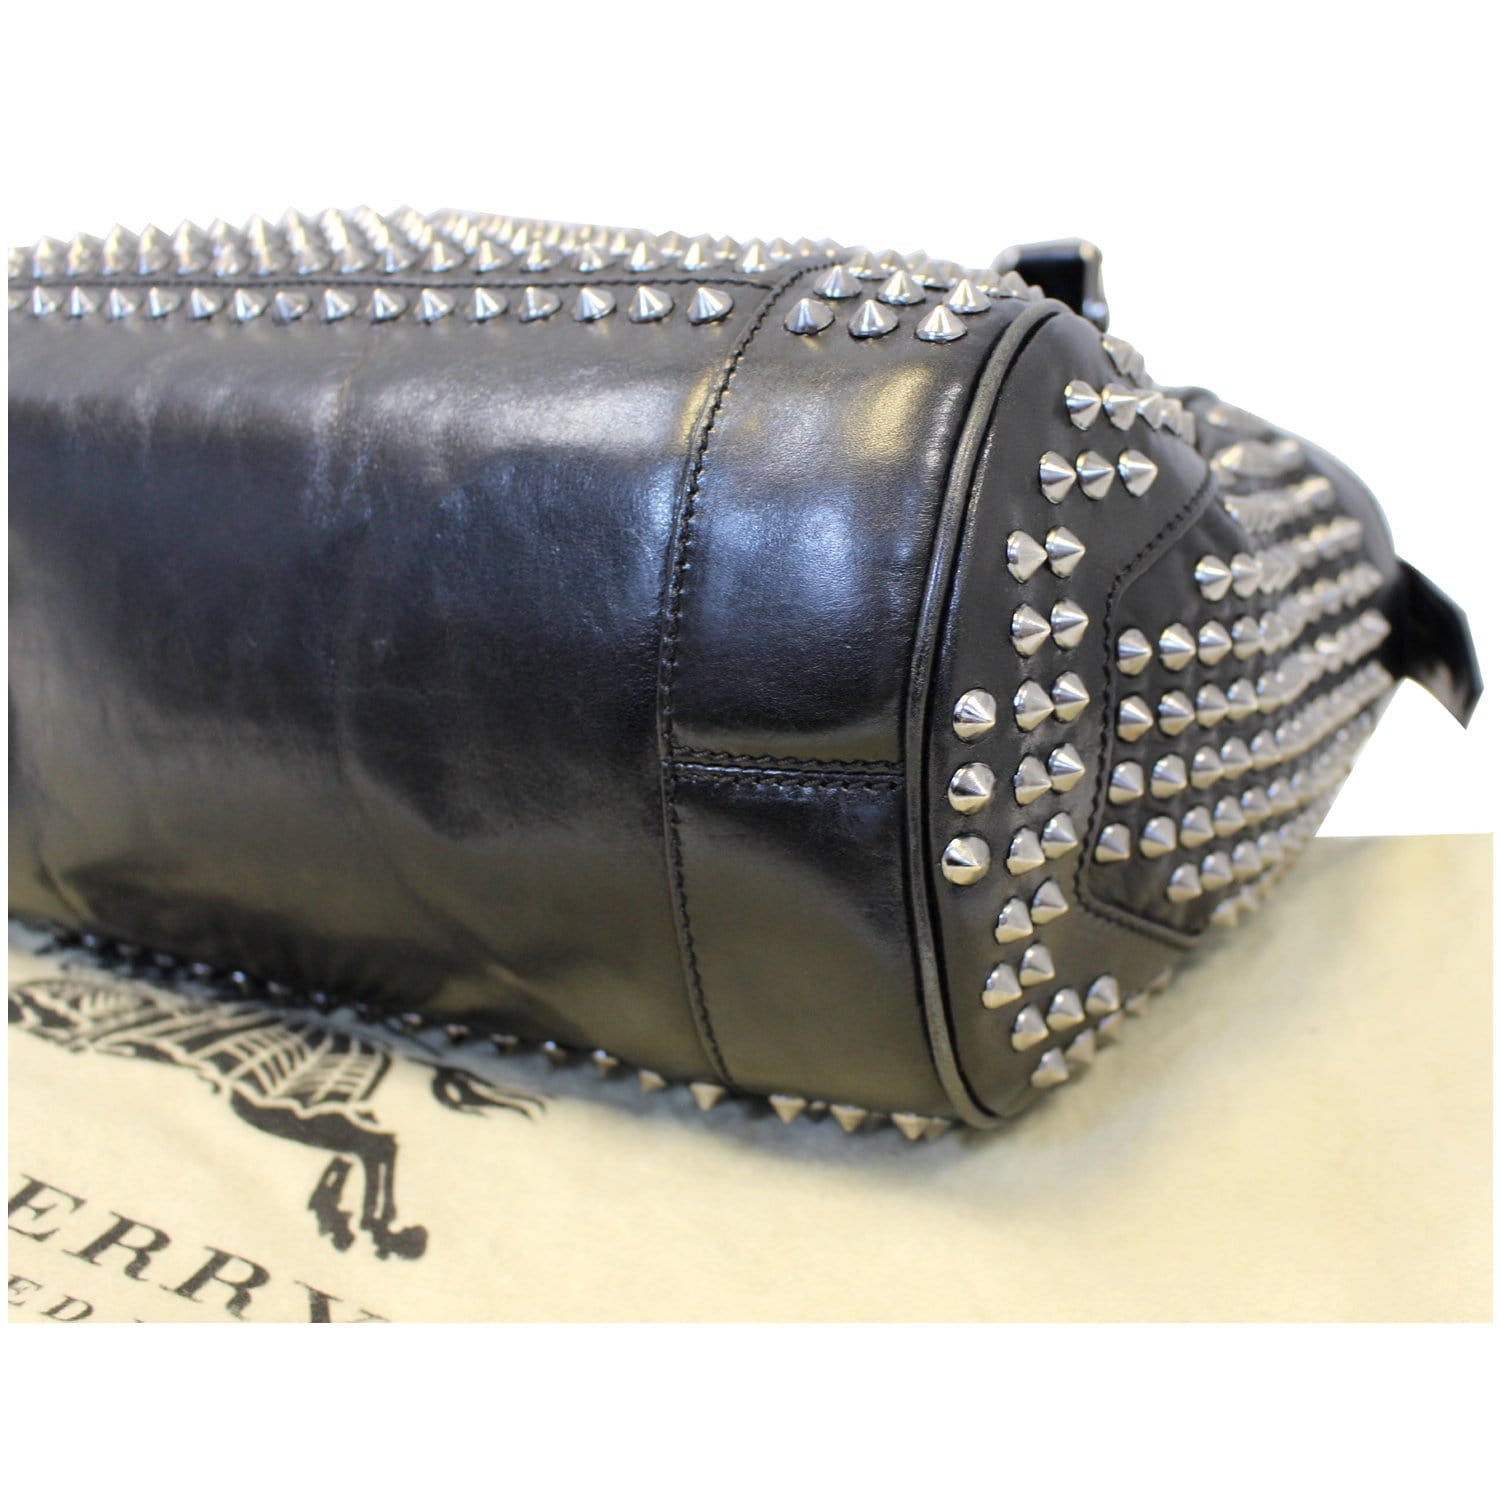 Burberry Bridle Baby Studded Leather Shoulder Bag Black, $1,195